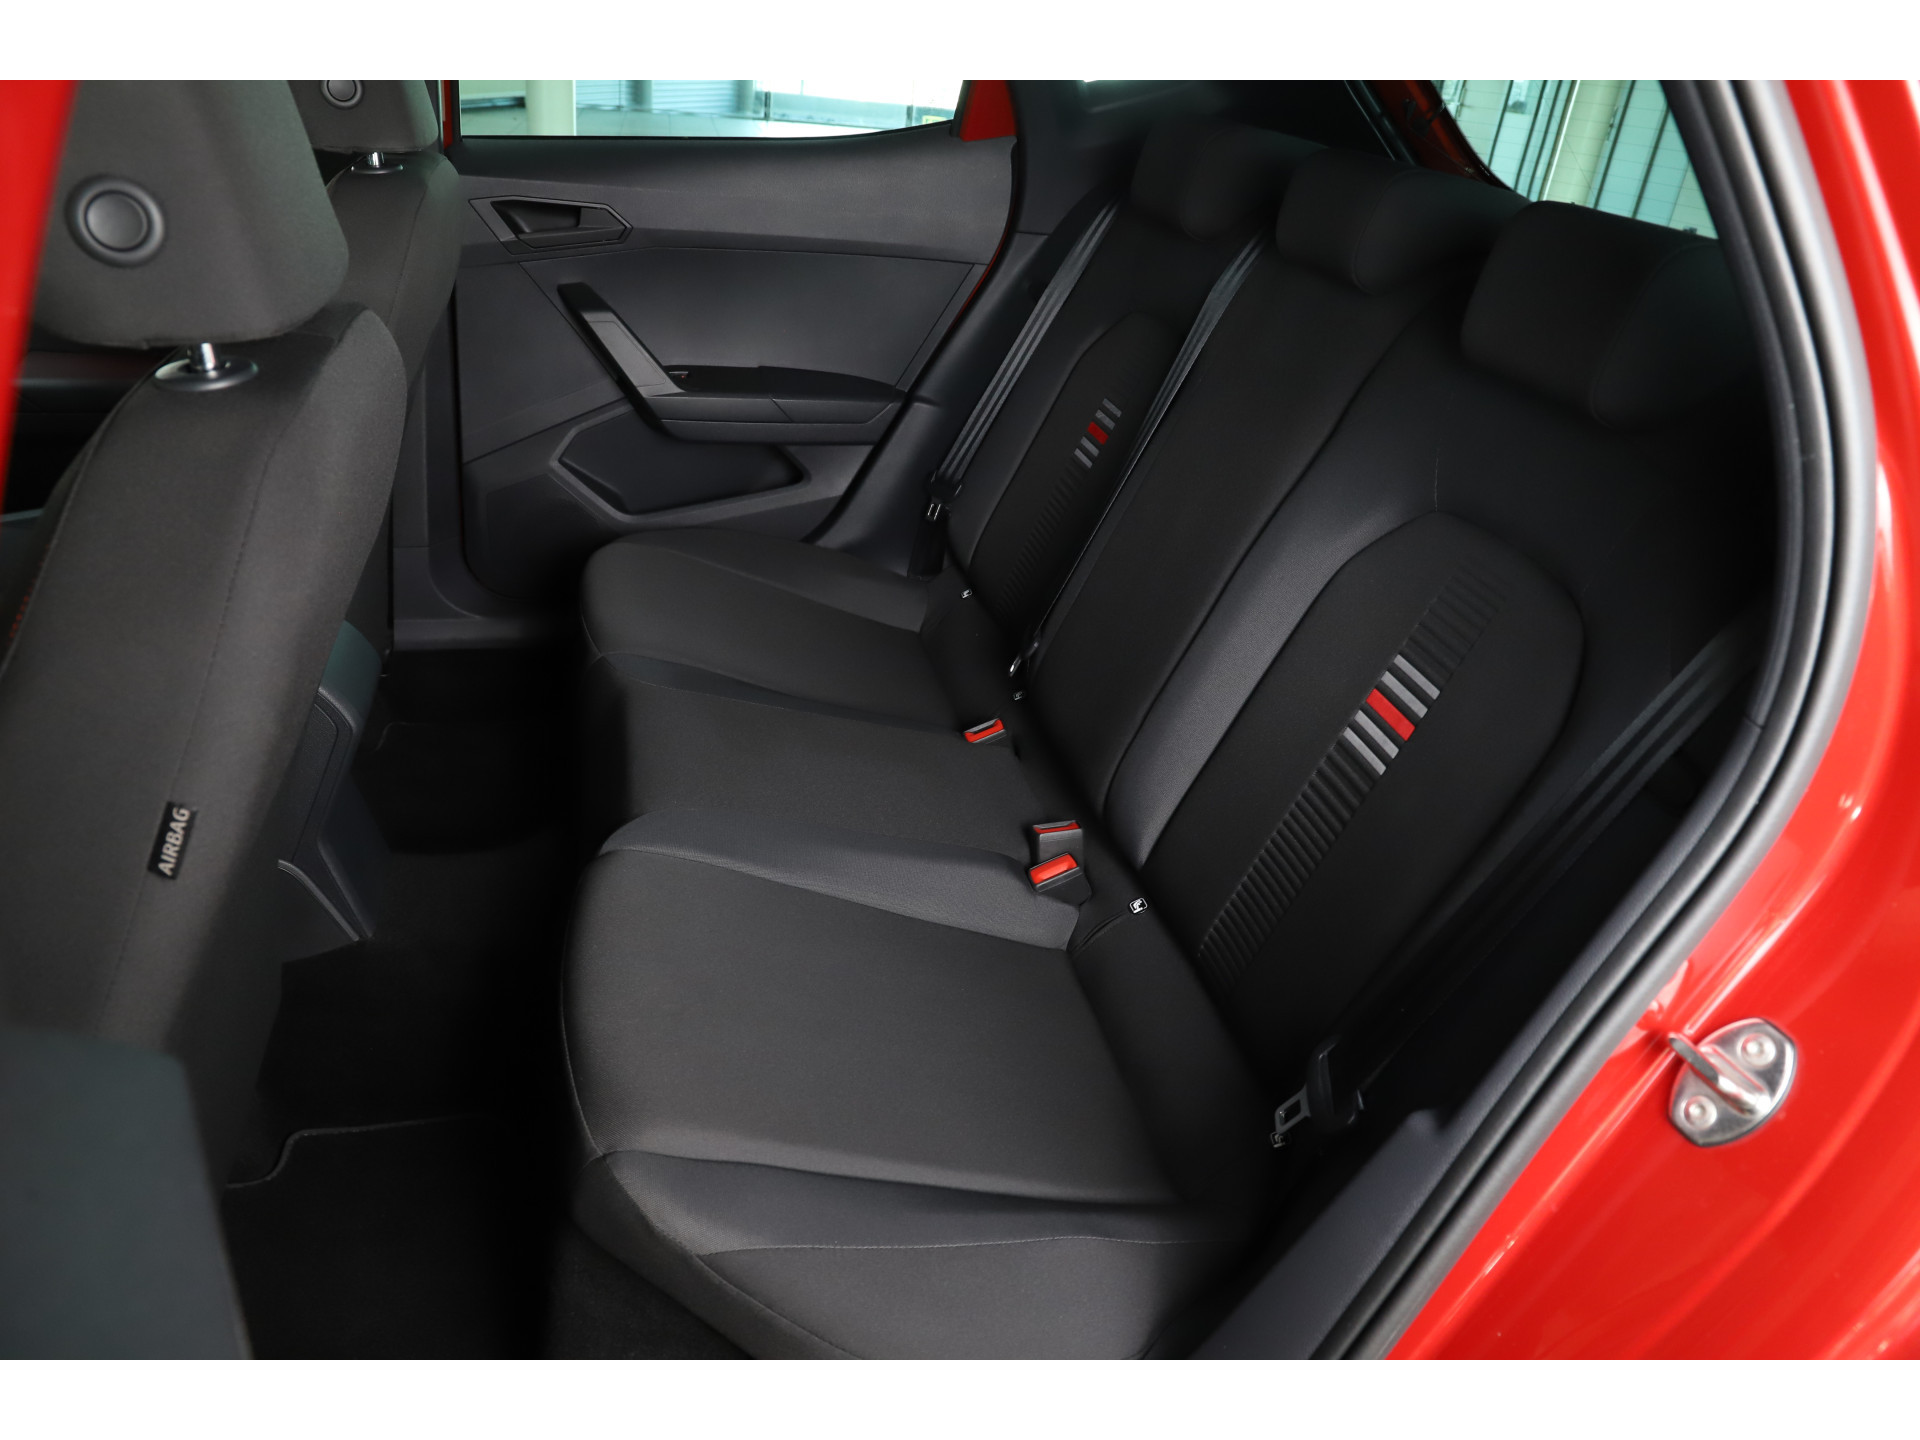 SEAT - Ibiza 1.0 TSI 95pk FR Business Intense - 2019